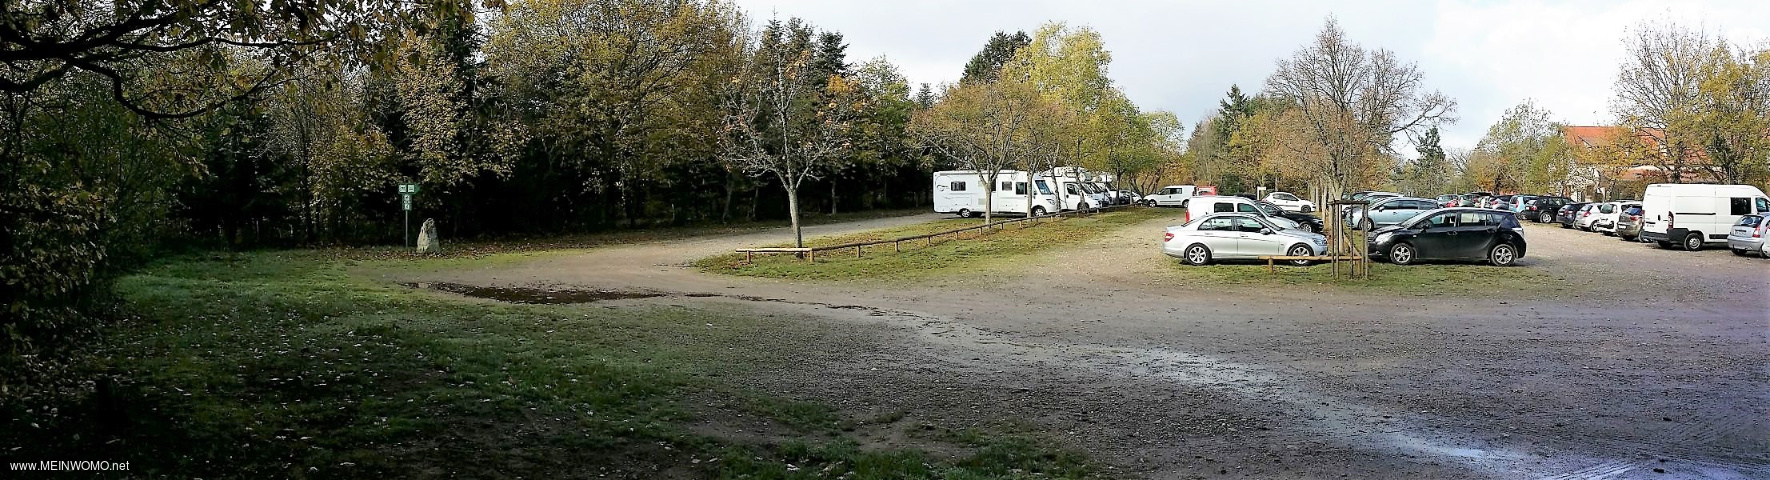  Ultima riga mostrata come parcheggio per camper.